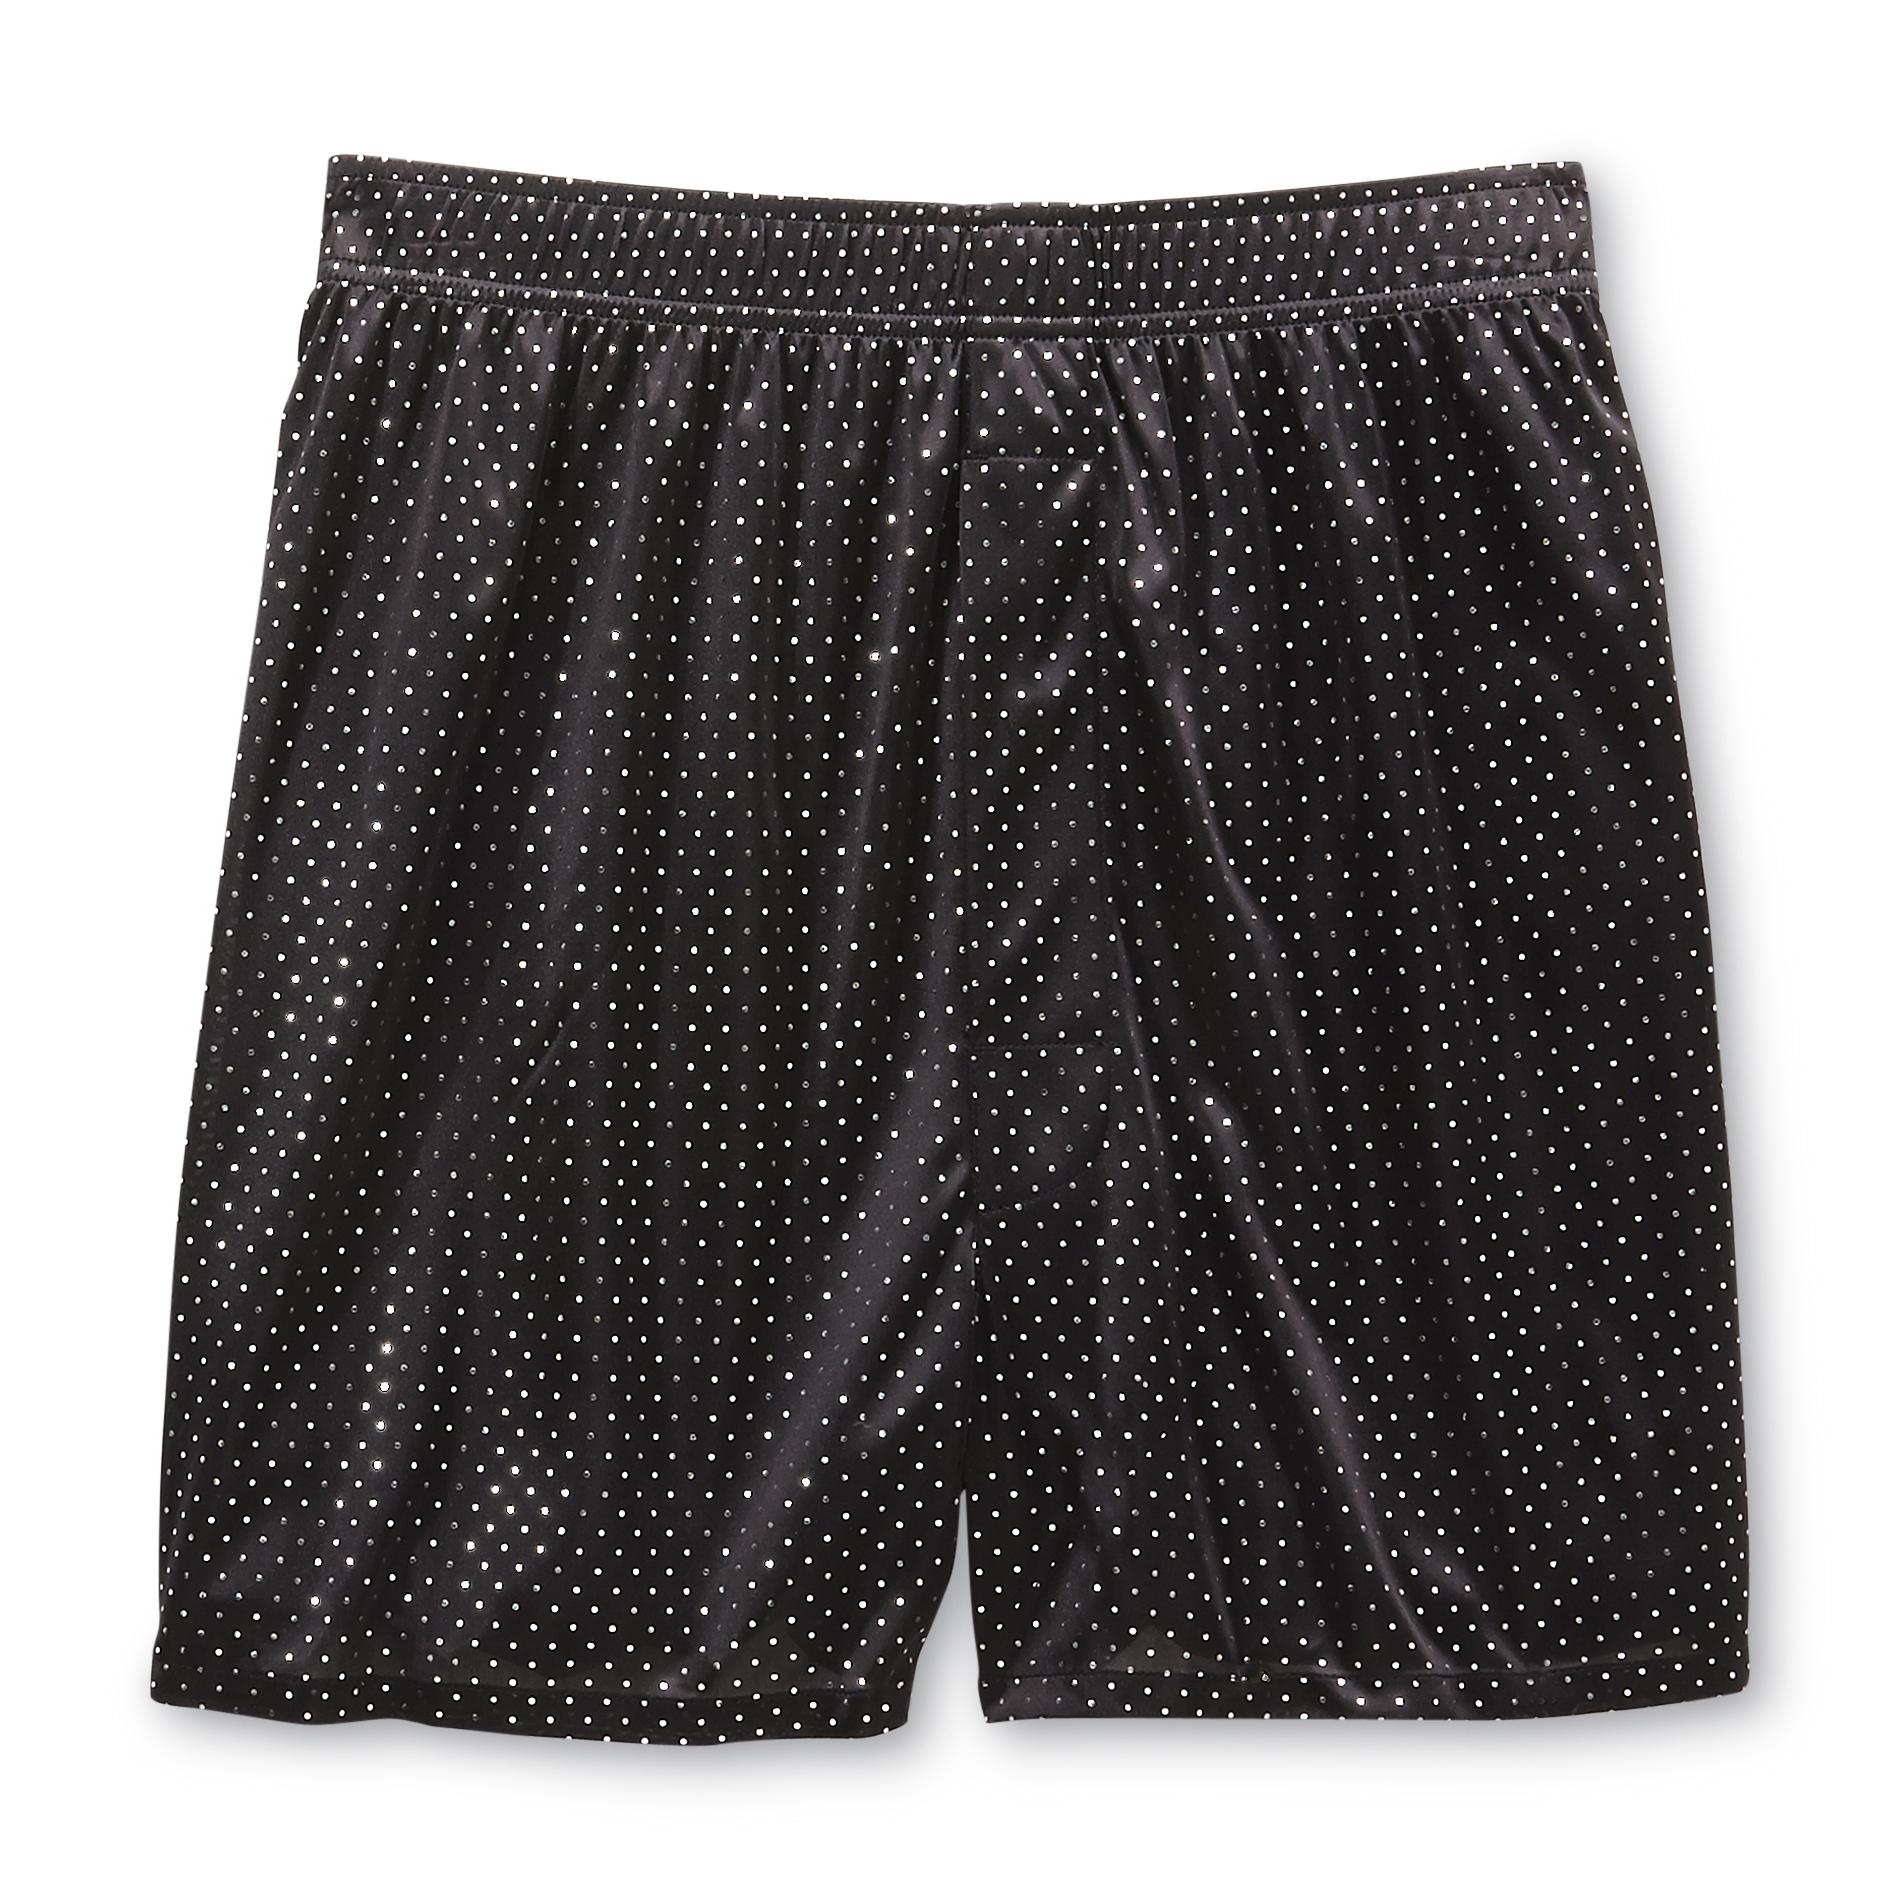 Joe Boxer Men's Metallic Boxer Shorts - Micro Dots